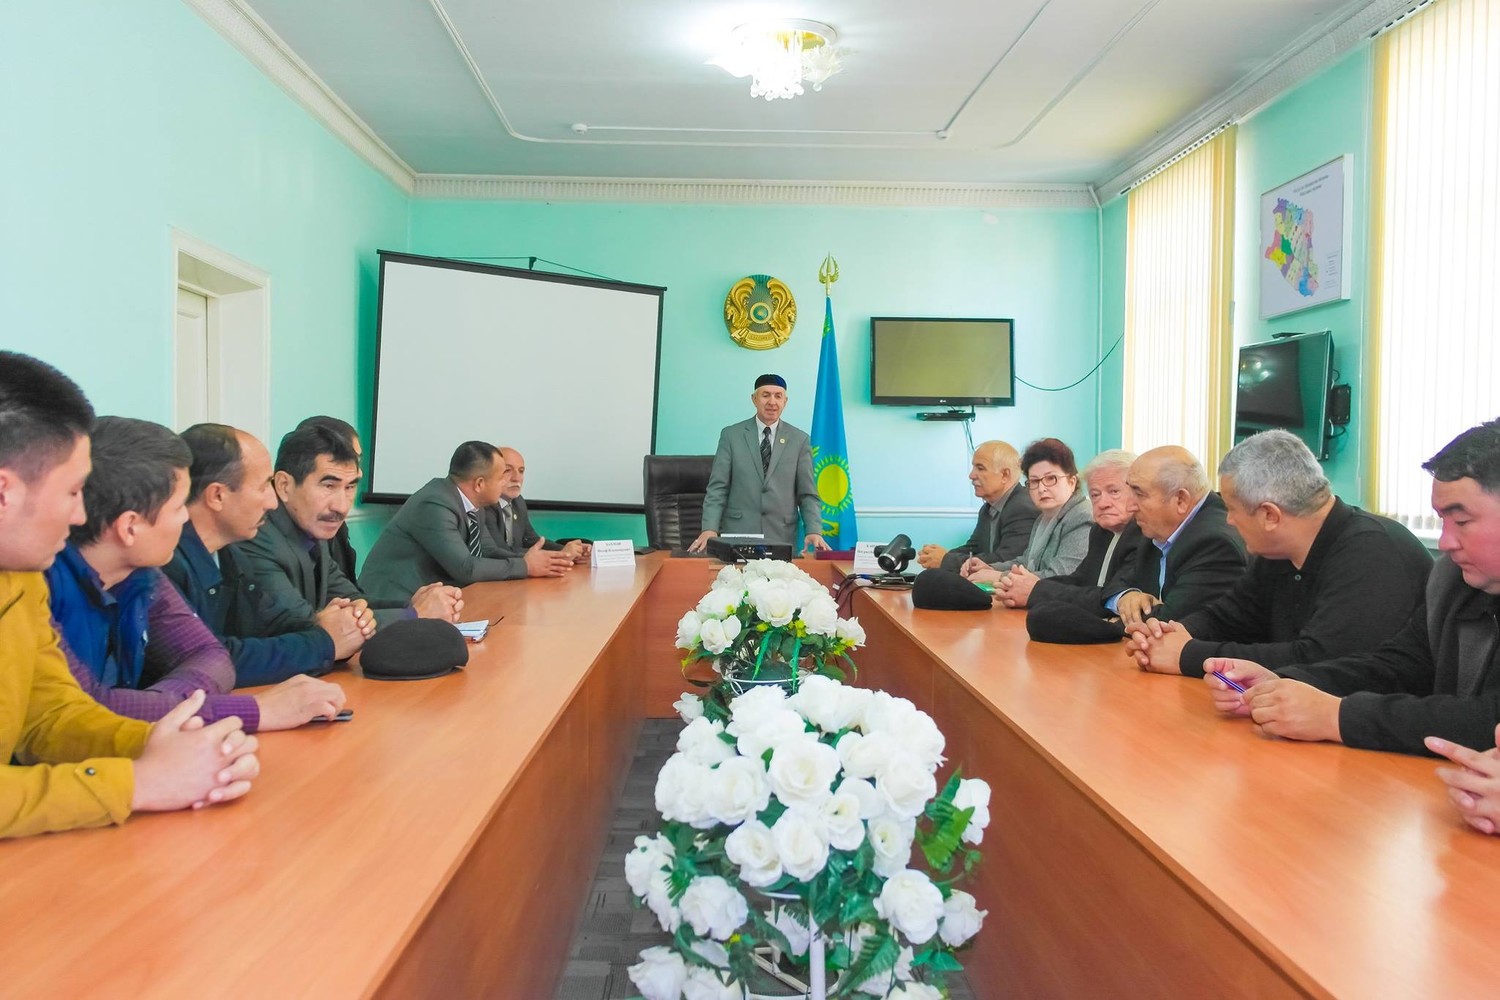 Ассамблея народа Казахстана ЮКО организовала семинар, чтобы обсудить - медиацию